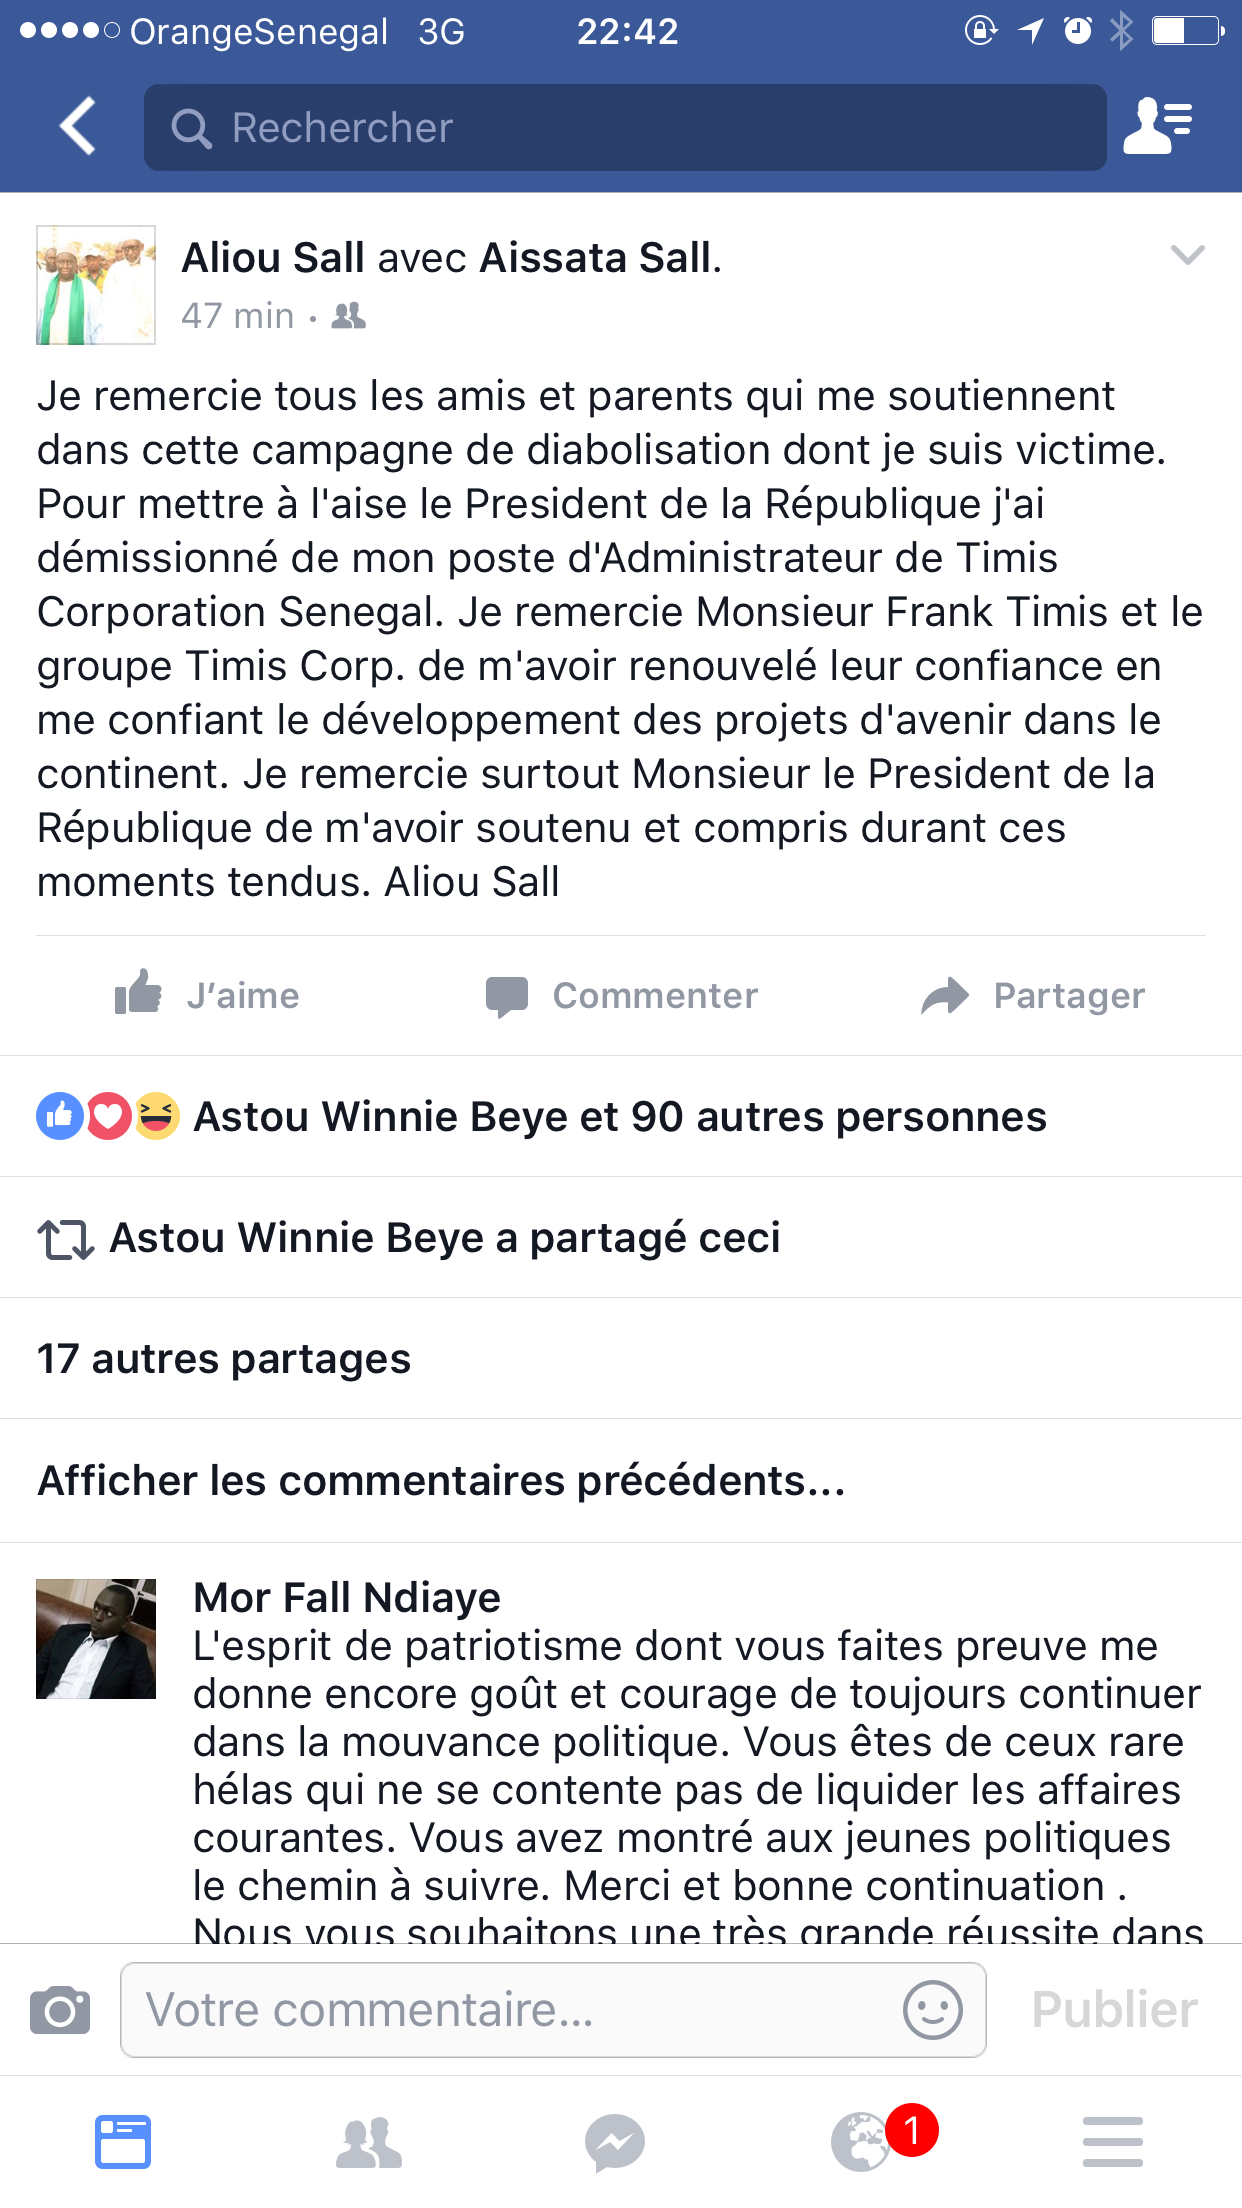 Face à la pression, Aliou Sall lâche Petro Tim Sénégal pour Timis Corp Afrique